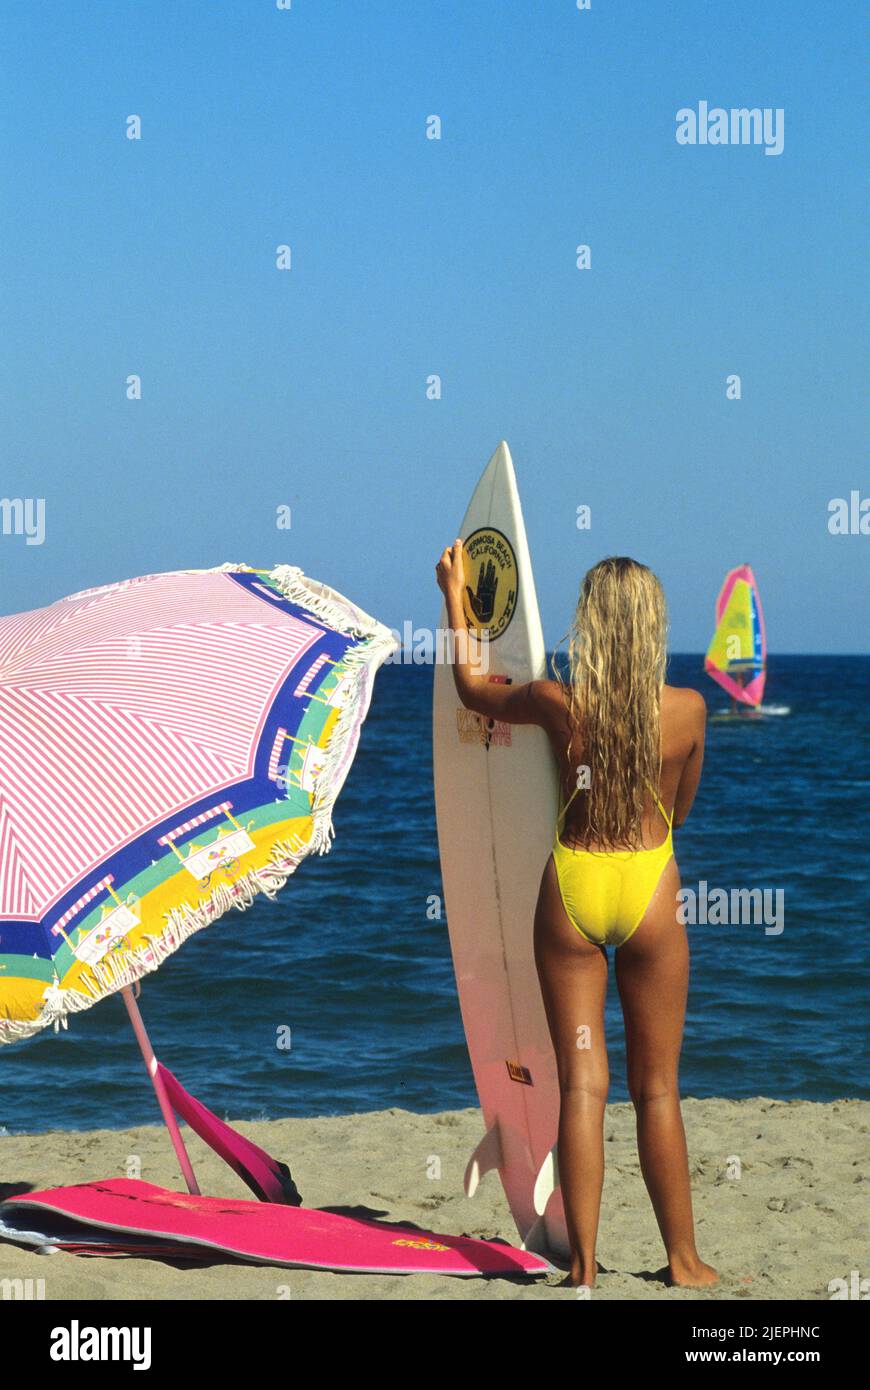 bella bionda capelli giovane donna standup sulla spiaggia con surf board retro fotocamera anteriore Foto Stock